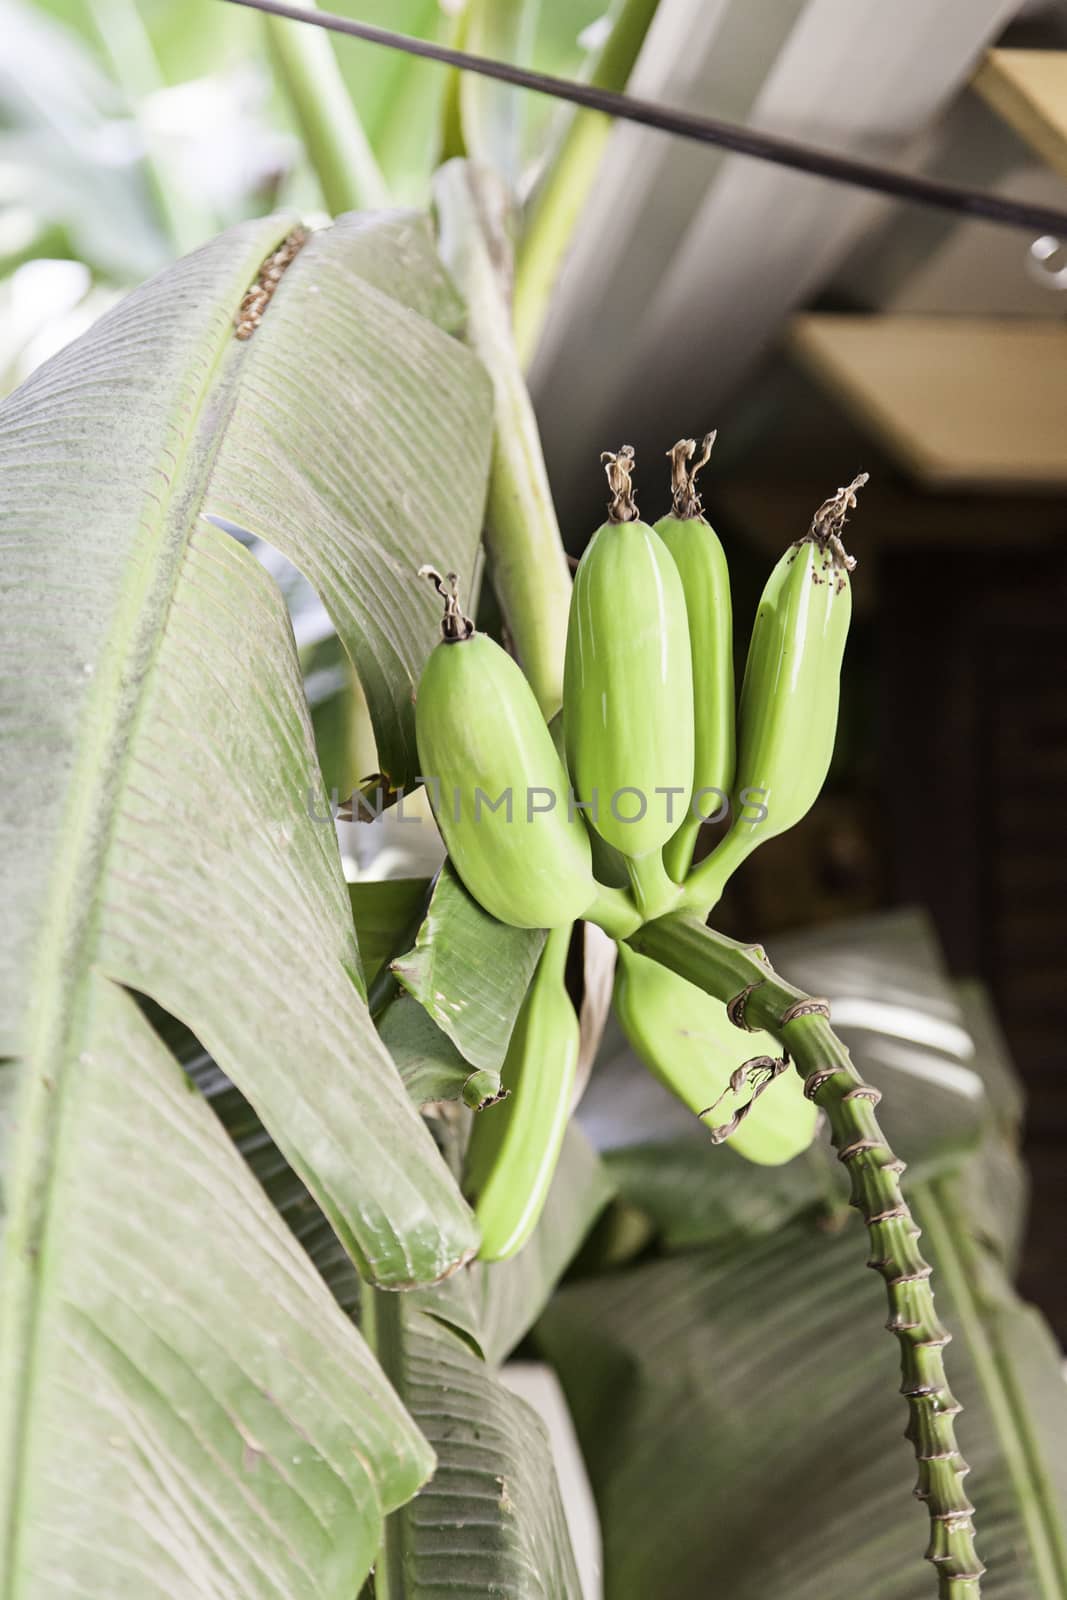 Banana plant by esebene